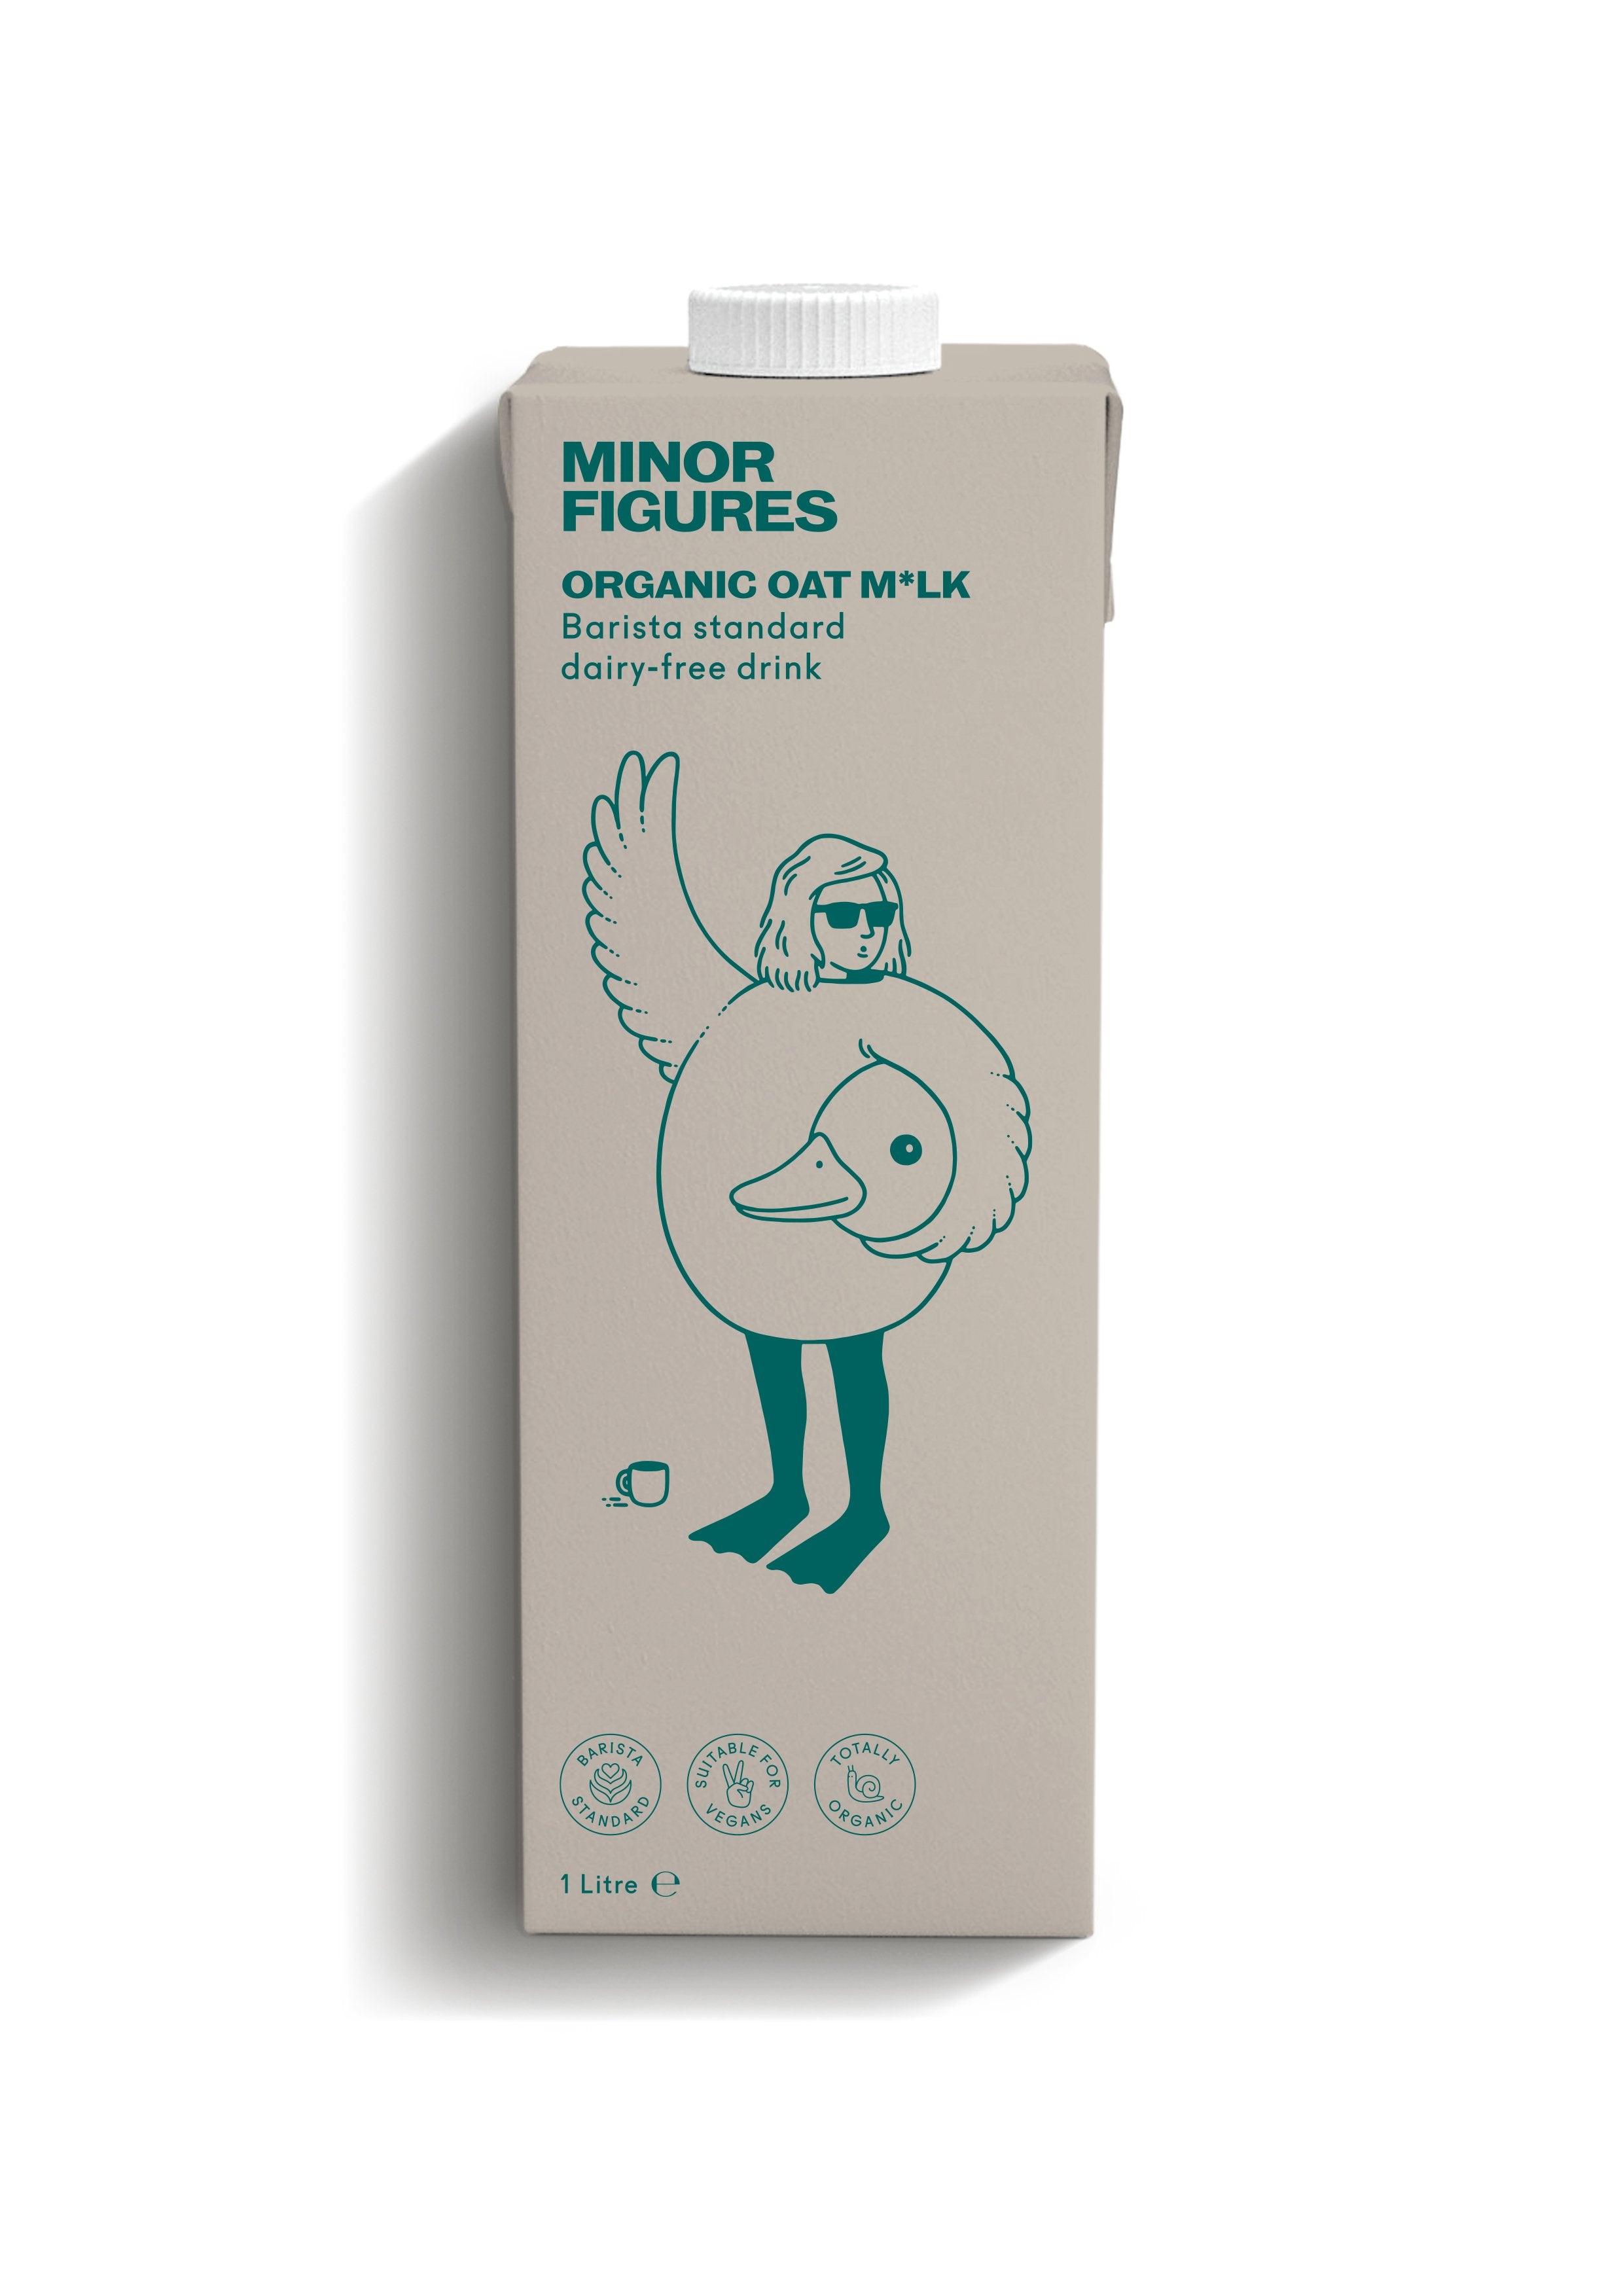 Minor Figures - Organic Oat M*lk // Stores Supply // Minor Figures